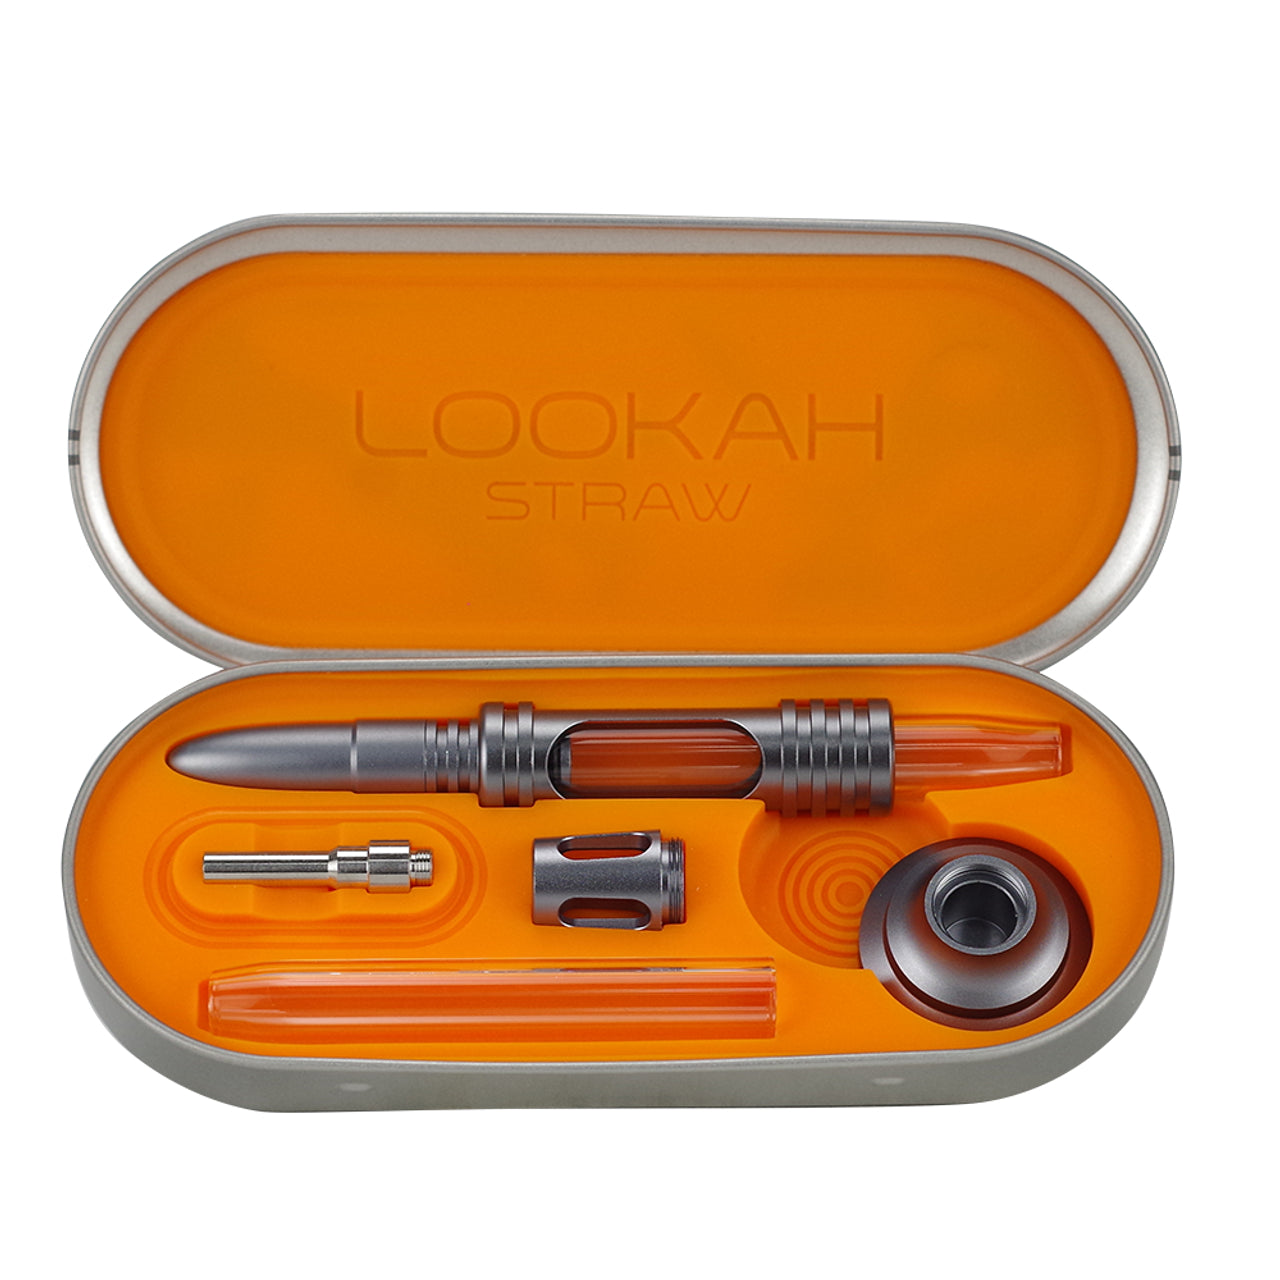 Lookah Portable Dab Straw Kit - Supply Natural